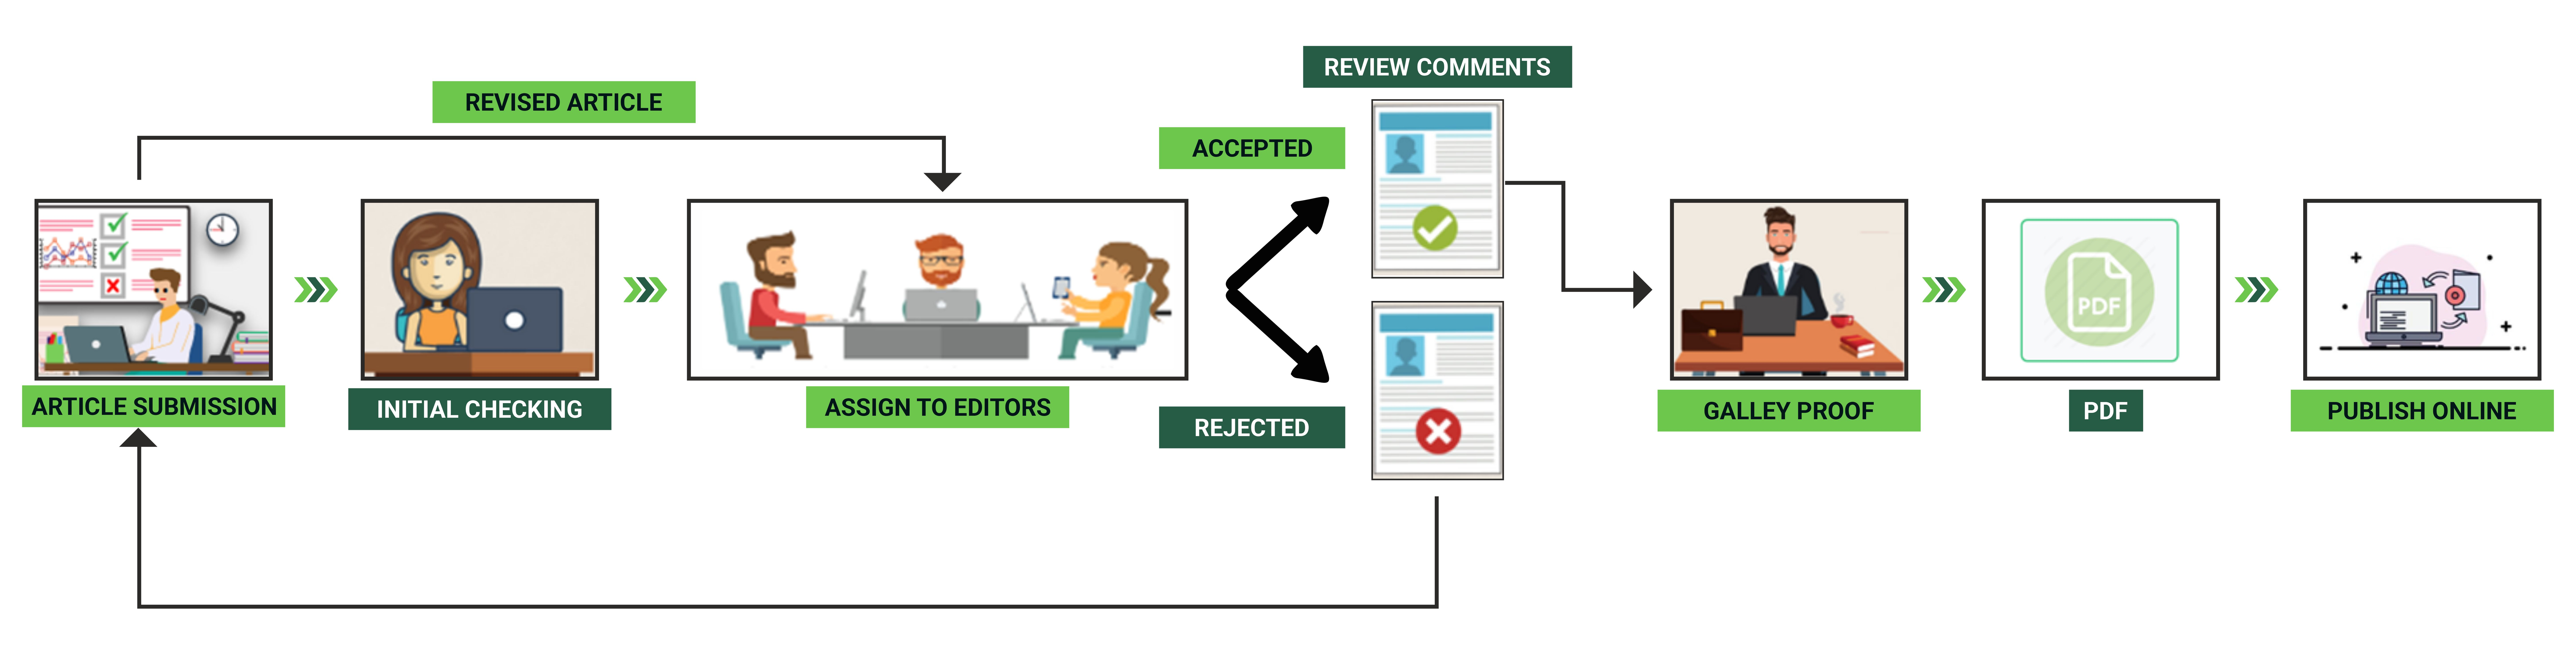 peer review process